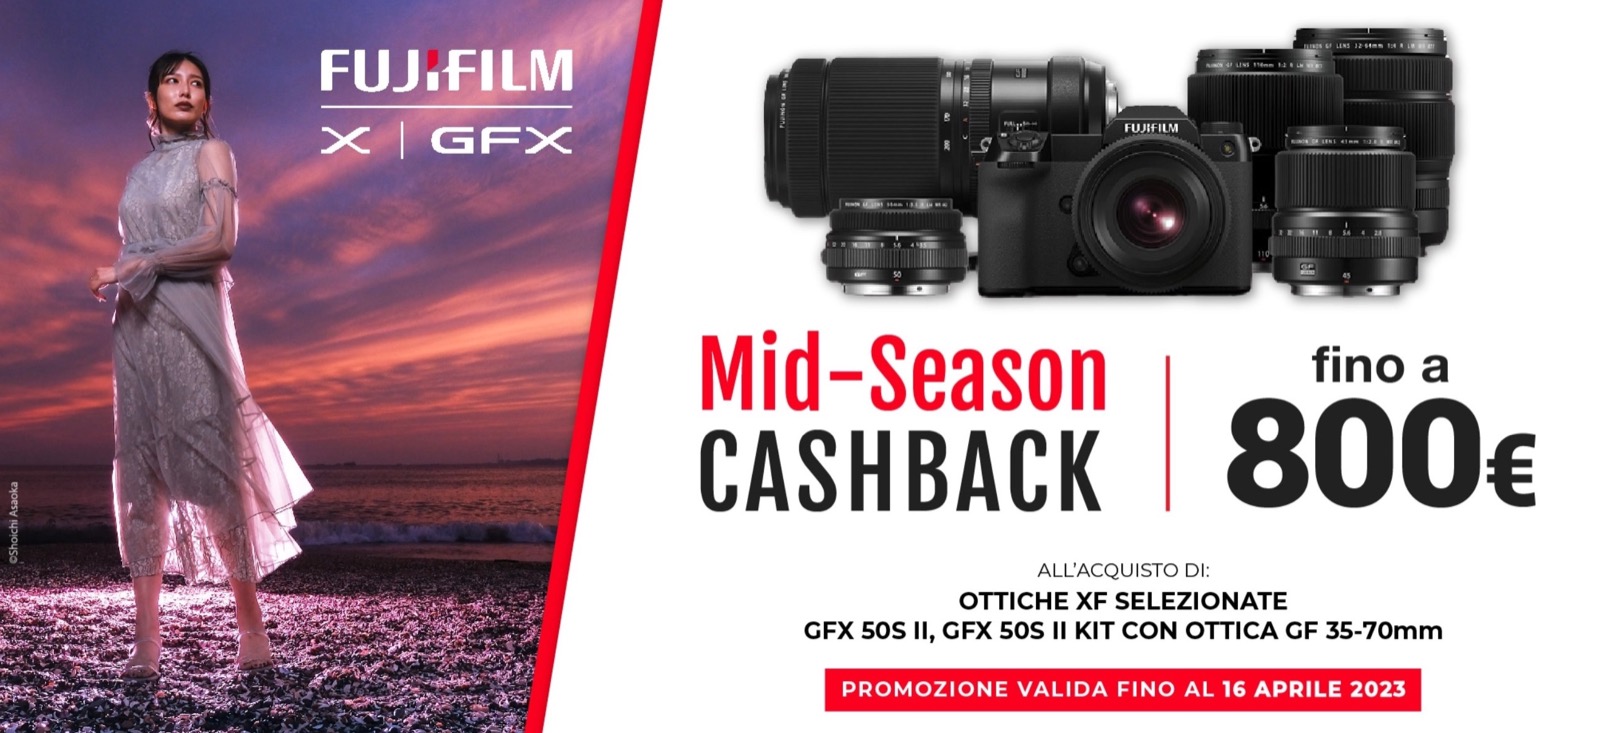 Partito il cashback Fujifilm, fino a 800 € di rimborso